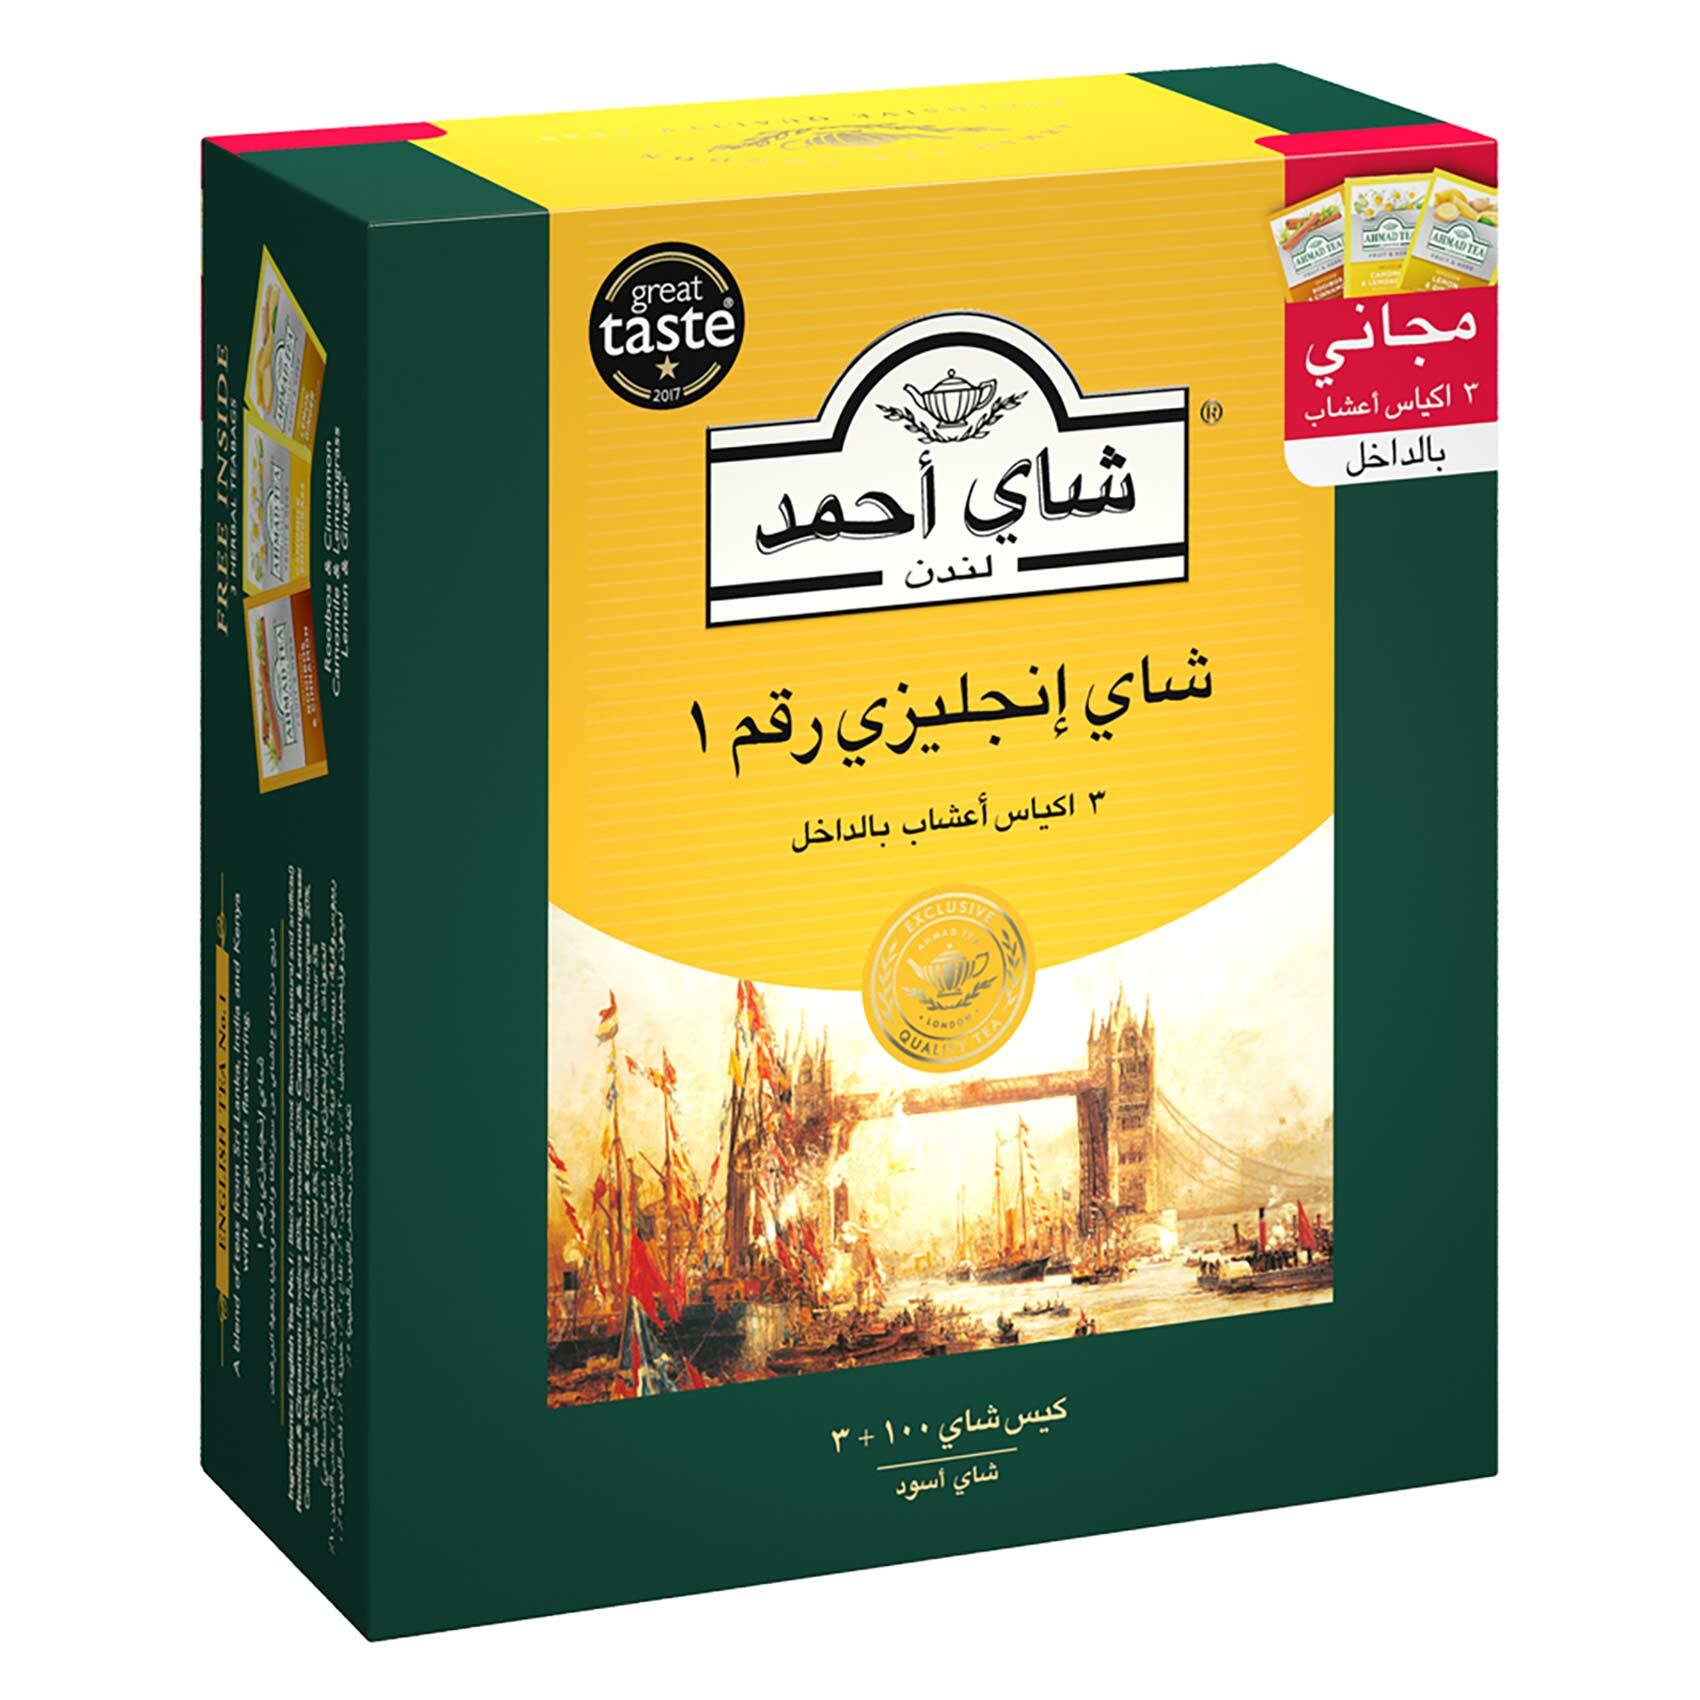 Ahmad Tea English Tea №1 Black Tea 2g*25pcs ❤️ home delivery